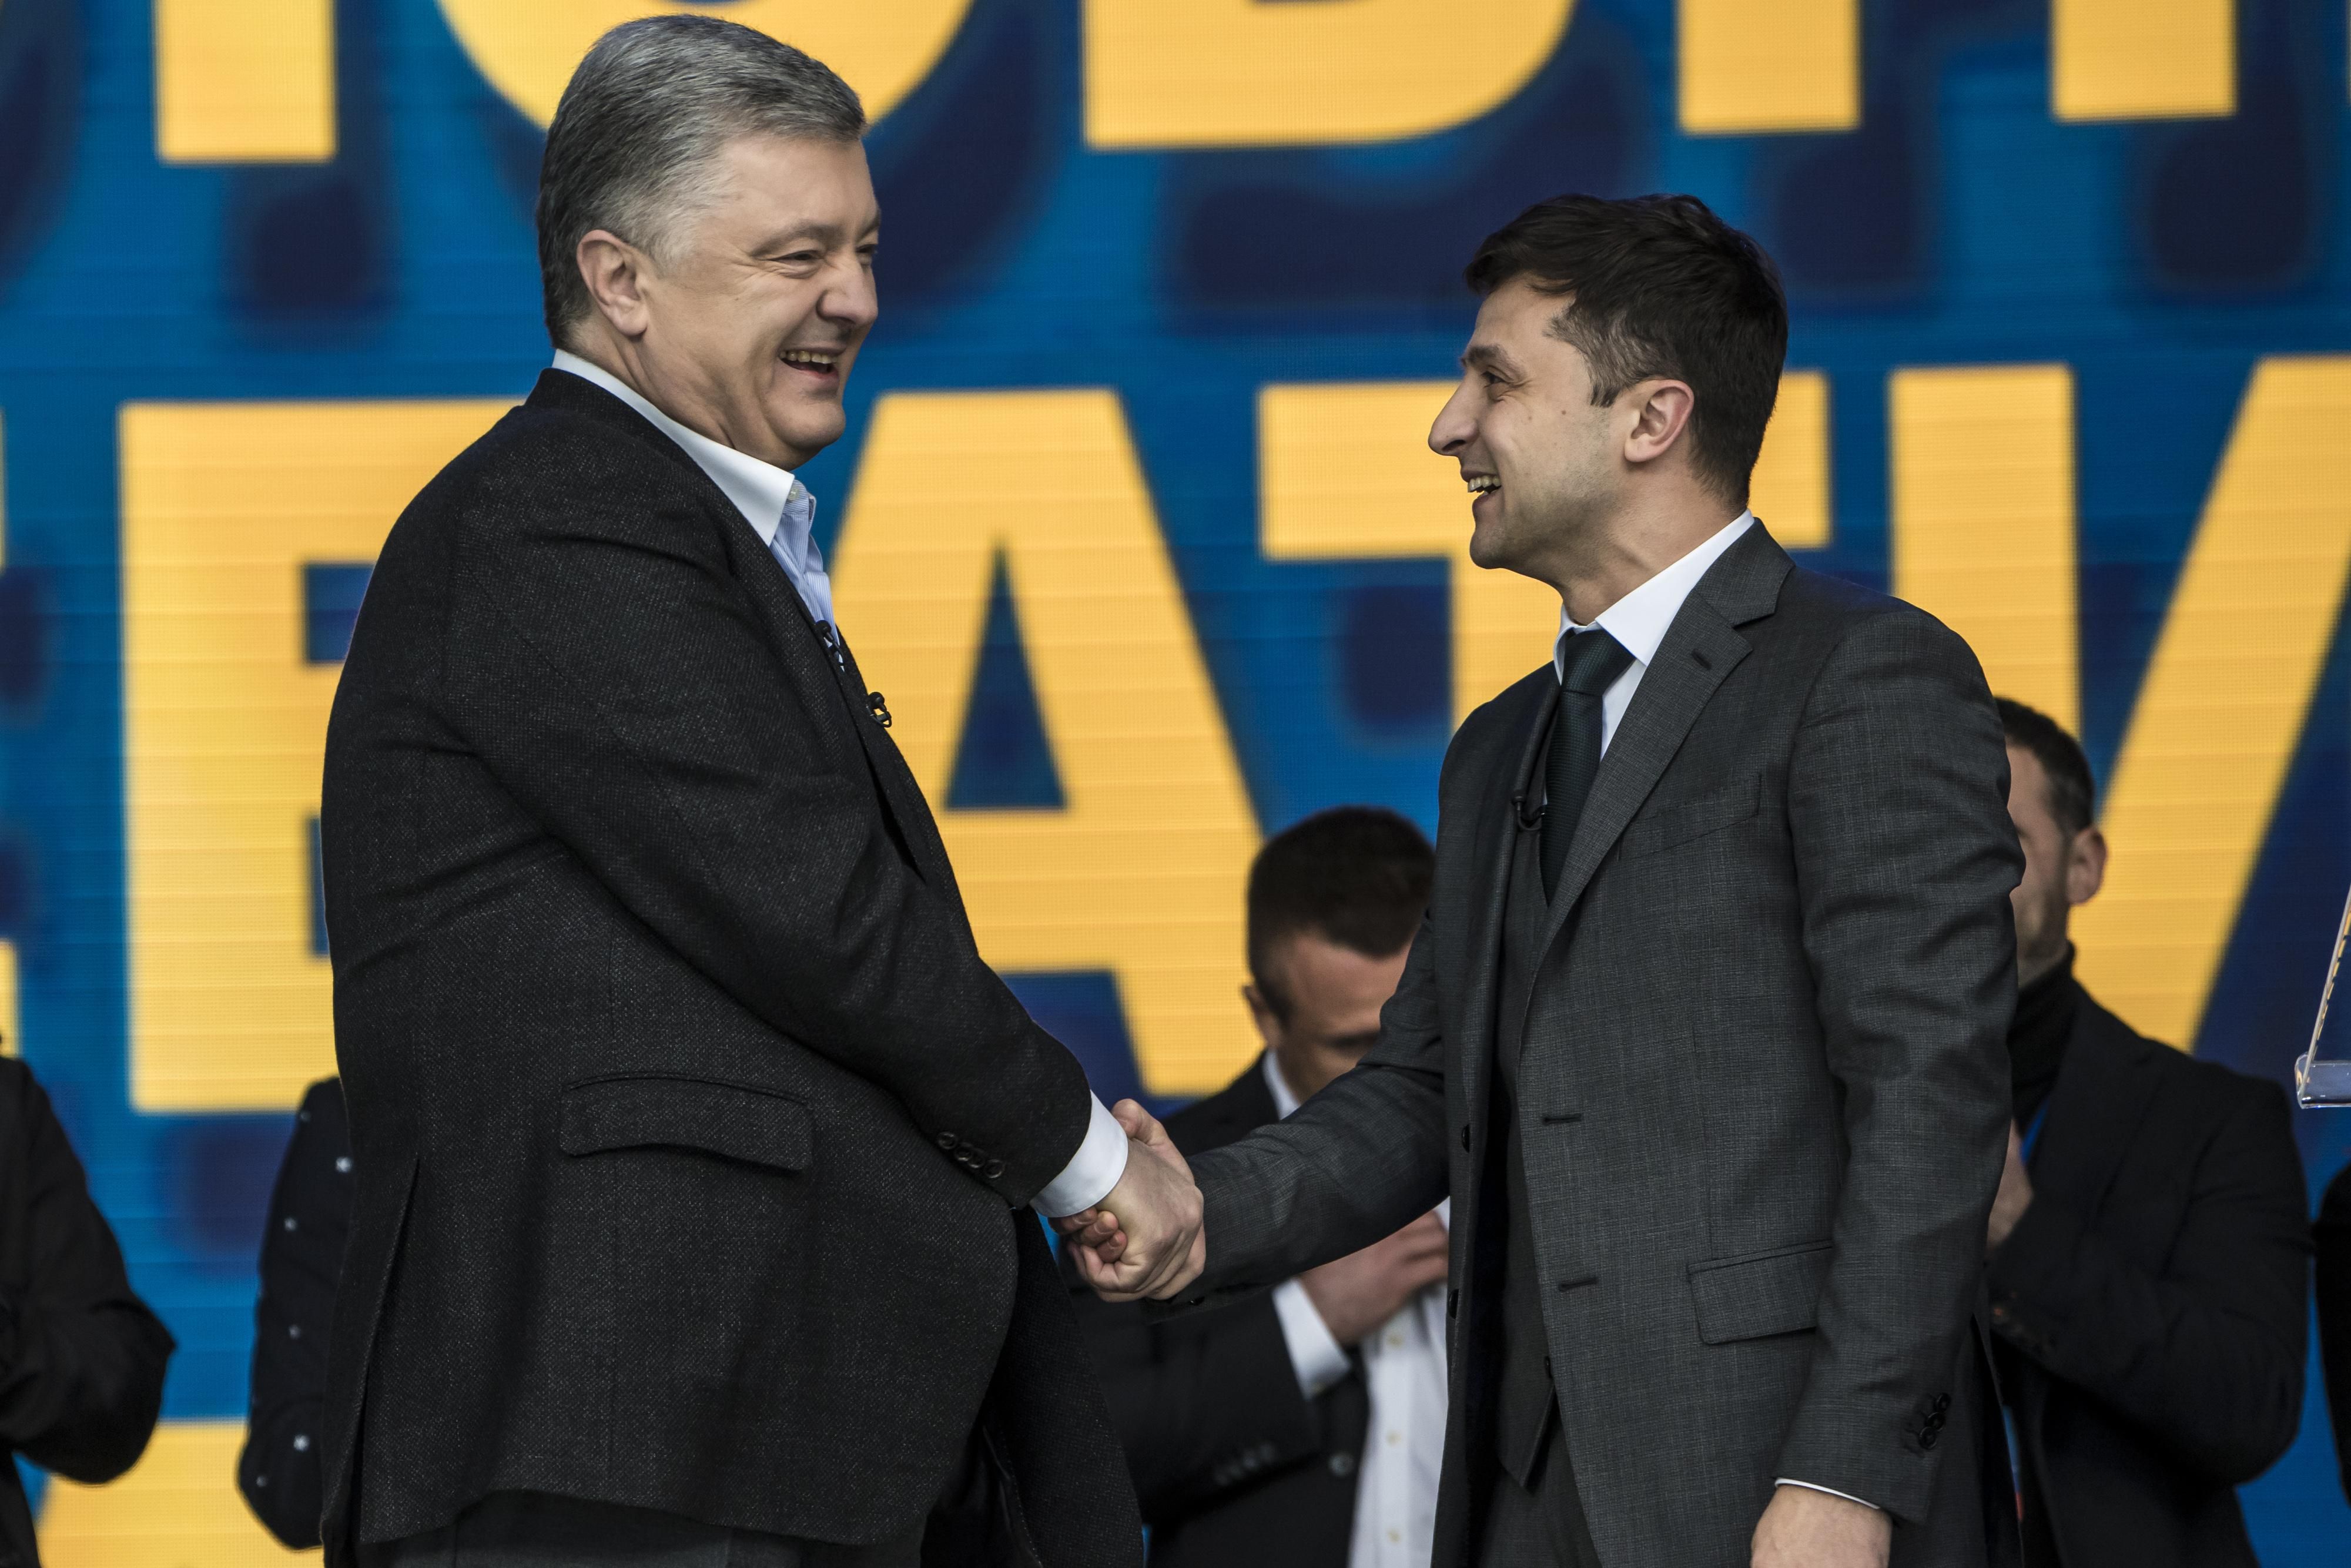 Дебати Порошенко - Зеленський на стадіоні - фото і відео 19.04.2019